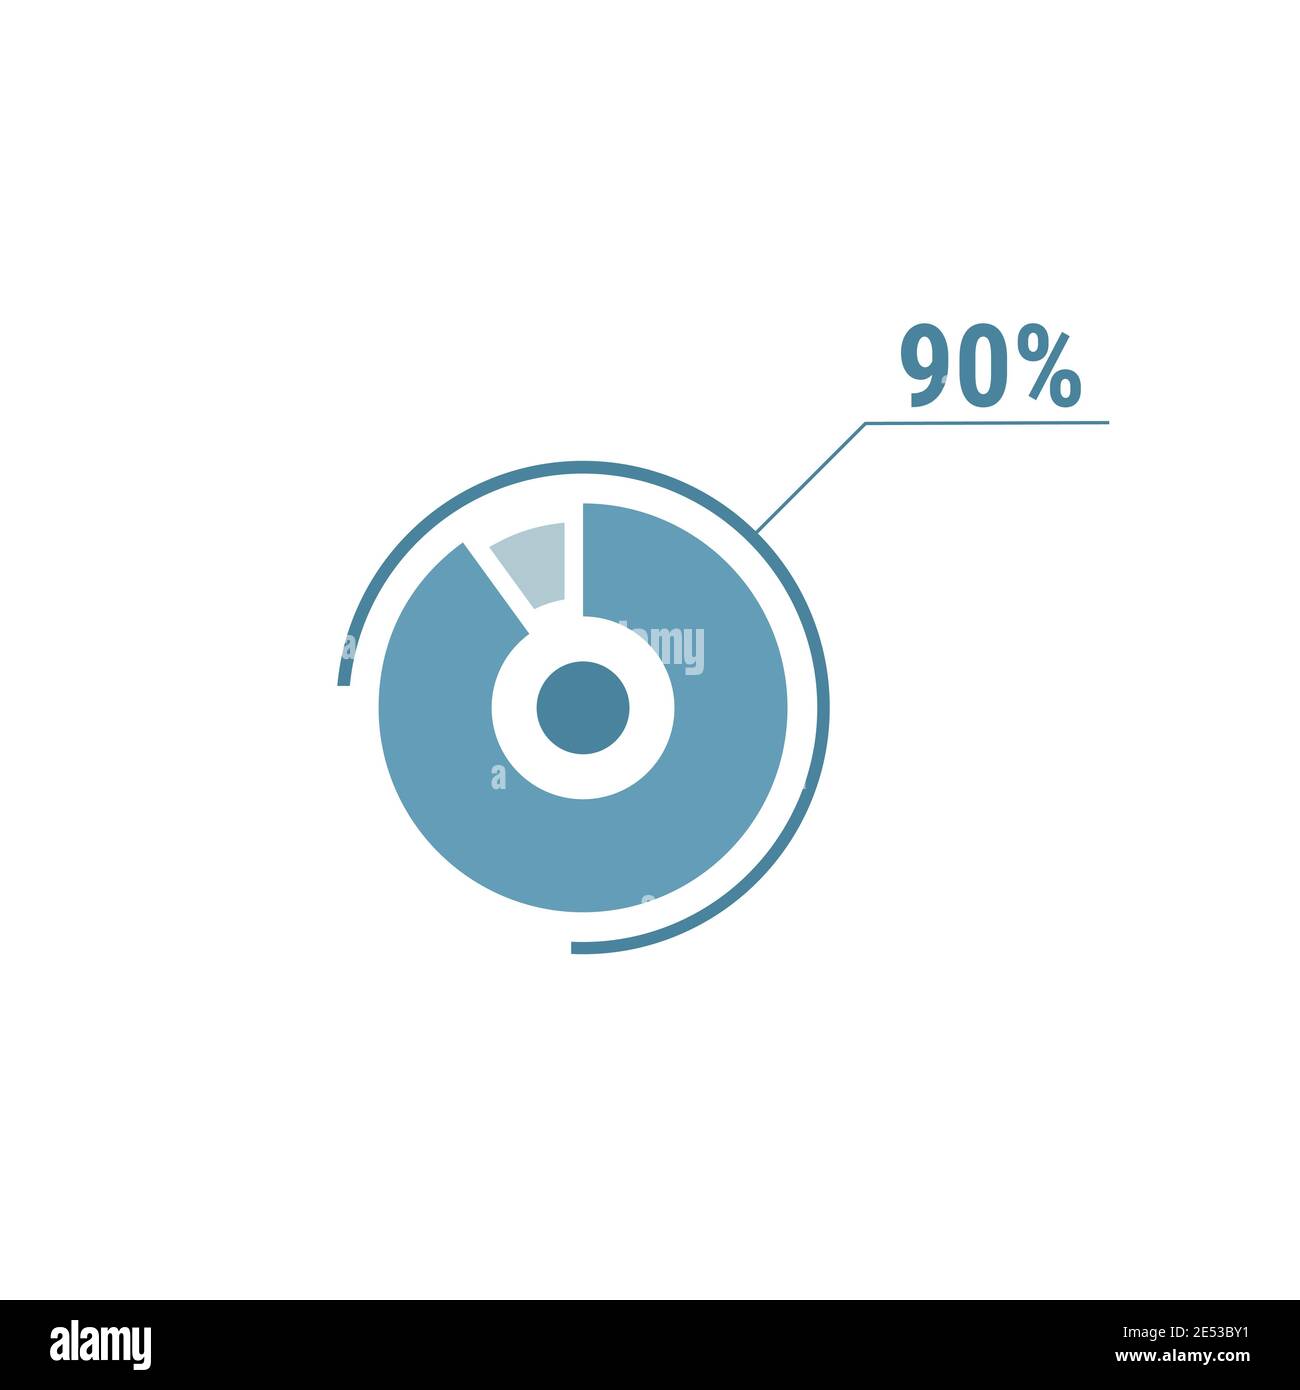 Neunzig Prozent Diagramm Torte, 90 Prozent Kreis Diagramm, Vektor-Design-Illustration, blau auf weißem Hintergrund. Stock Vektor